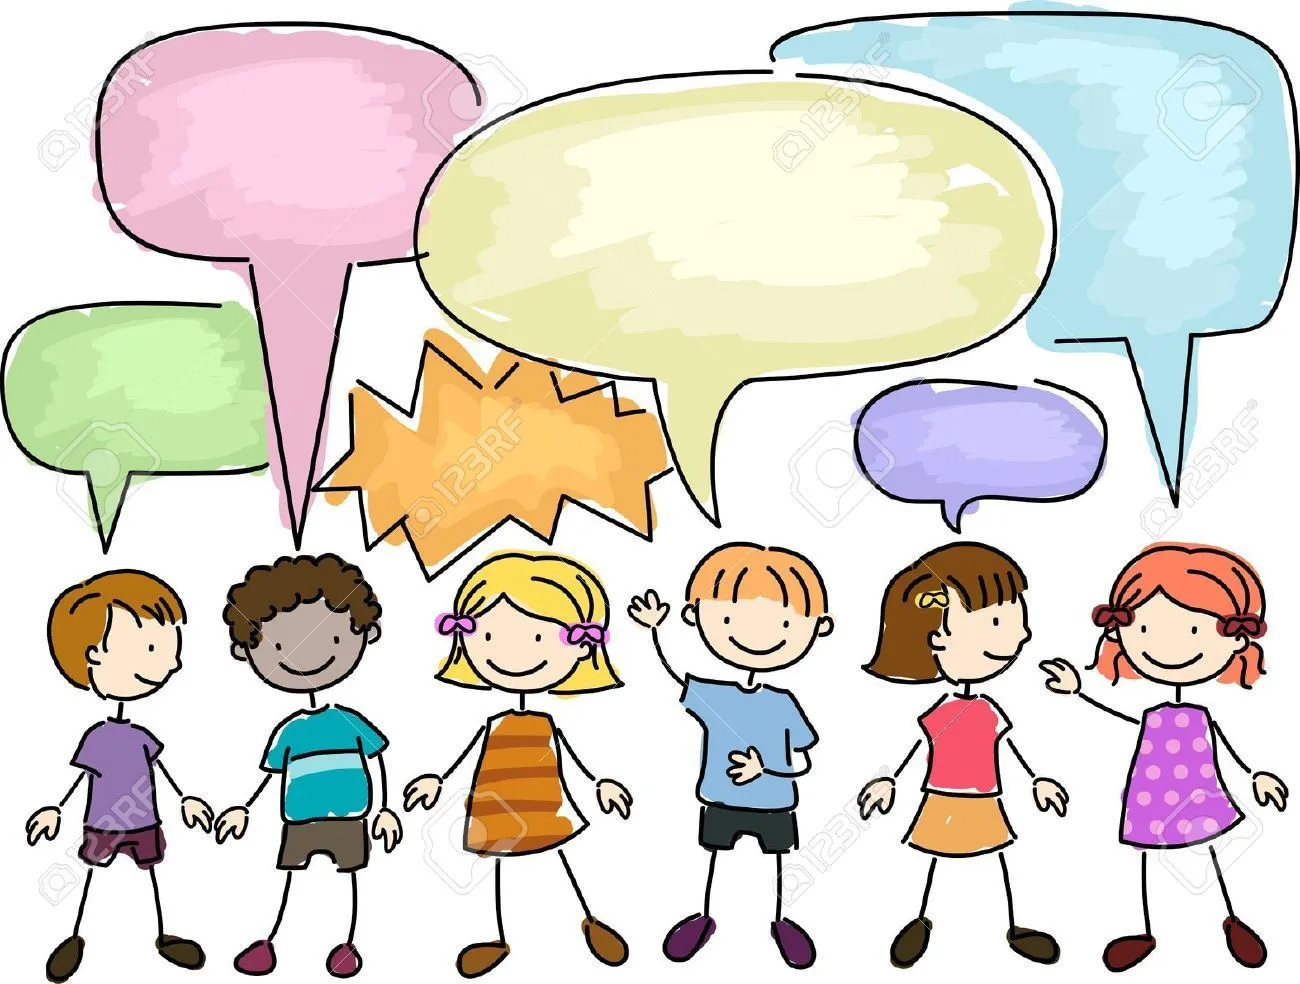 niños hablando - Buscar con Google | Sixth Grade | Pinterest ...